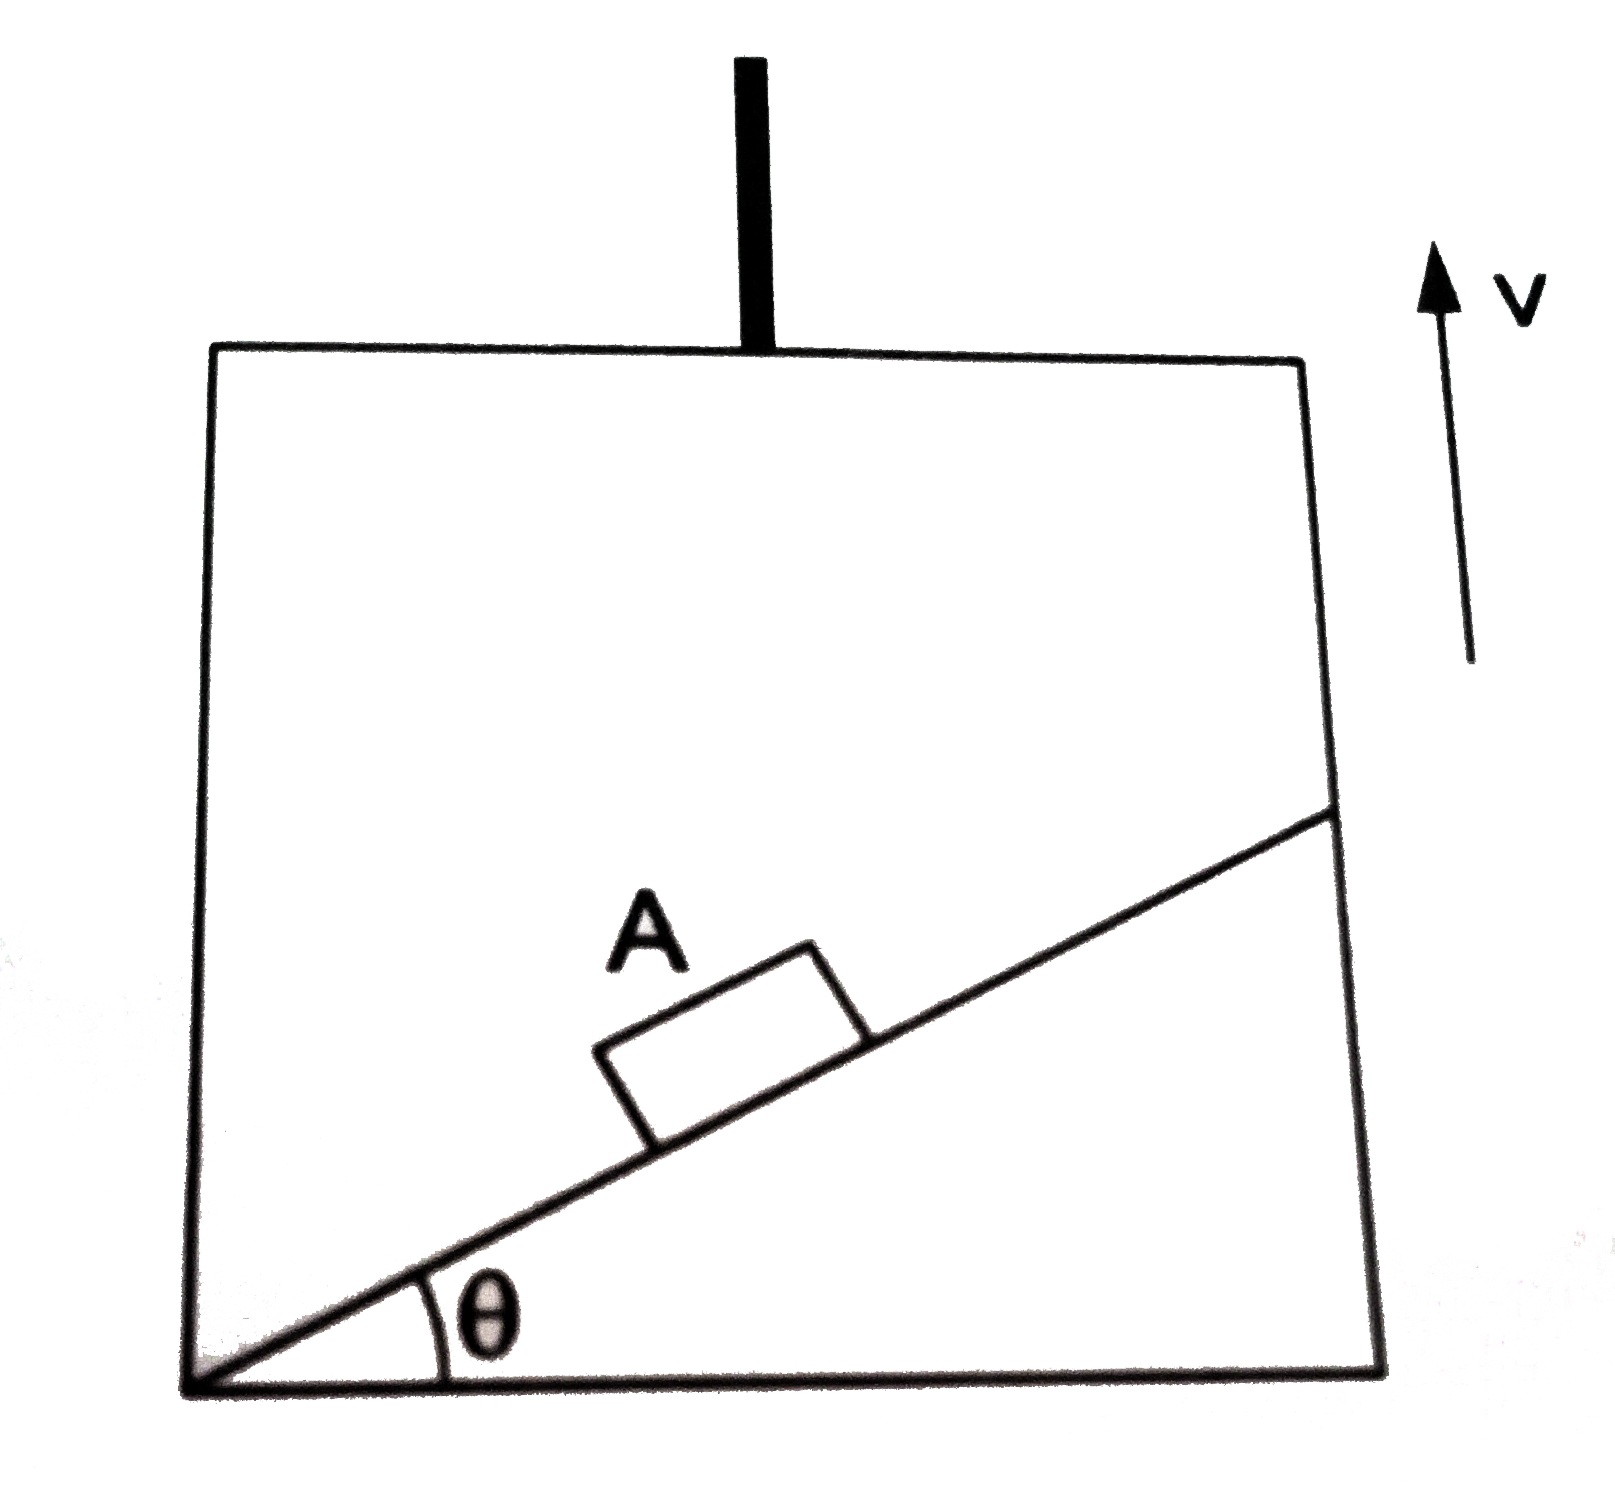 ऊपर की ओर एकसमान वेग v से गतिशील लिफ्ट में एक आनत तल जड़ा हुआ है जिसकी लंबाई L तथा क्षैतिज से उसका झुकाव theta है | घर्षण को अनदेखा करें | इस आनत तल पर एक गुटका A फिसल सकता है | यदि गुटके को आनत तल के शीर्षबिंदु से छोड़ा जाए, तो इसको आनत तल की पूरी लंबाई तक फिसलने में लगनेवाला समय ज्ञात करें |